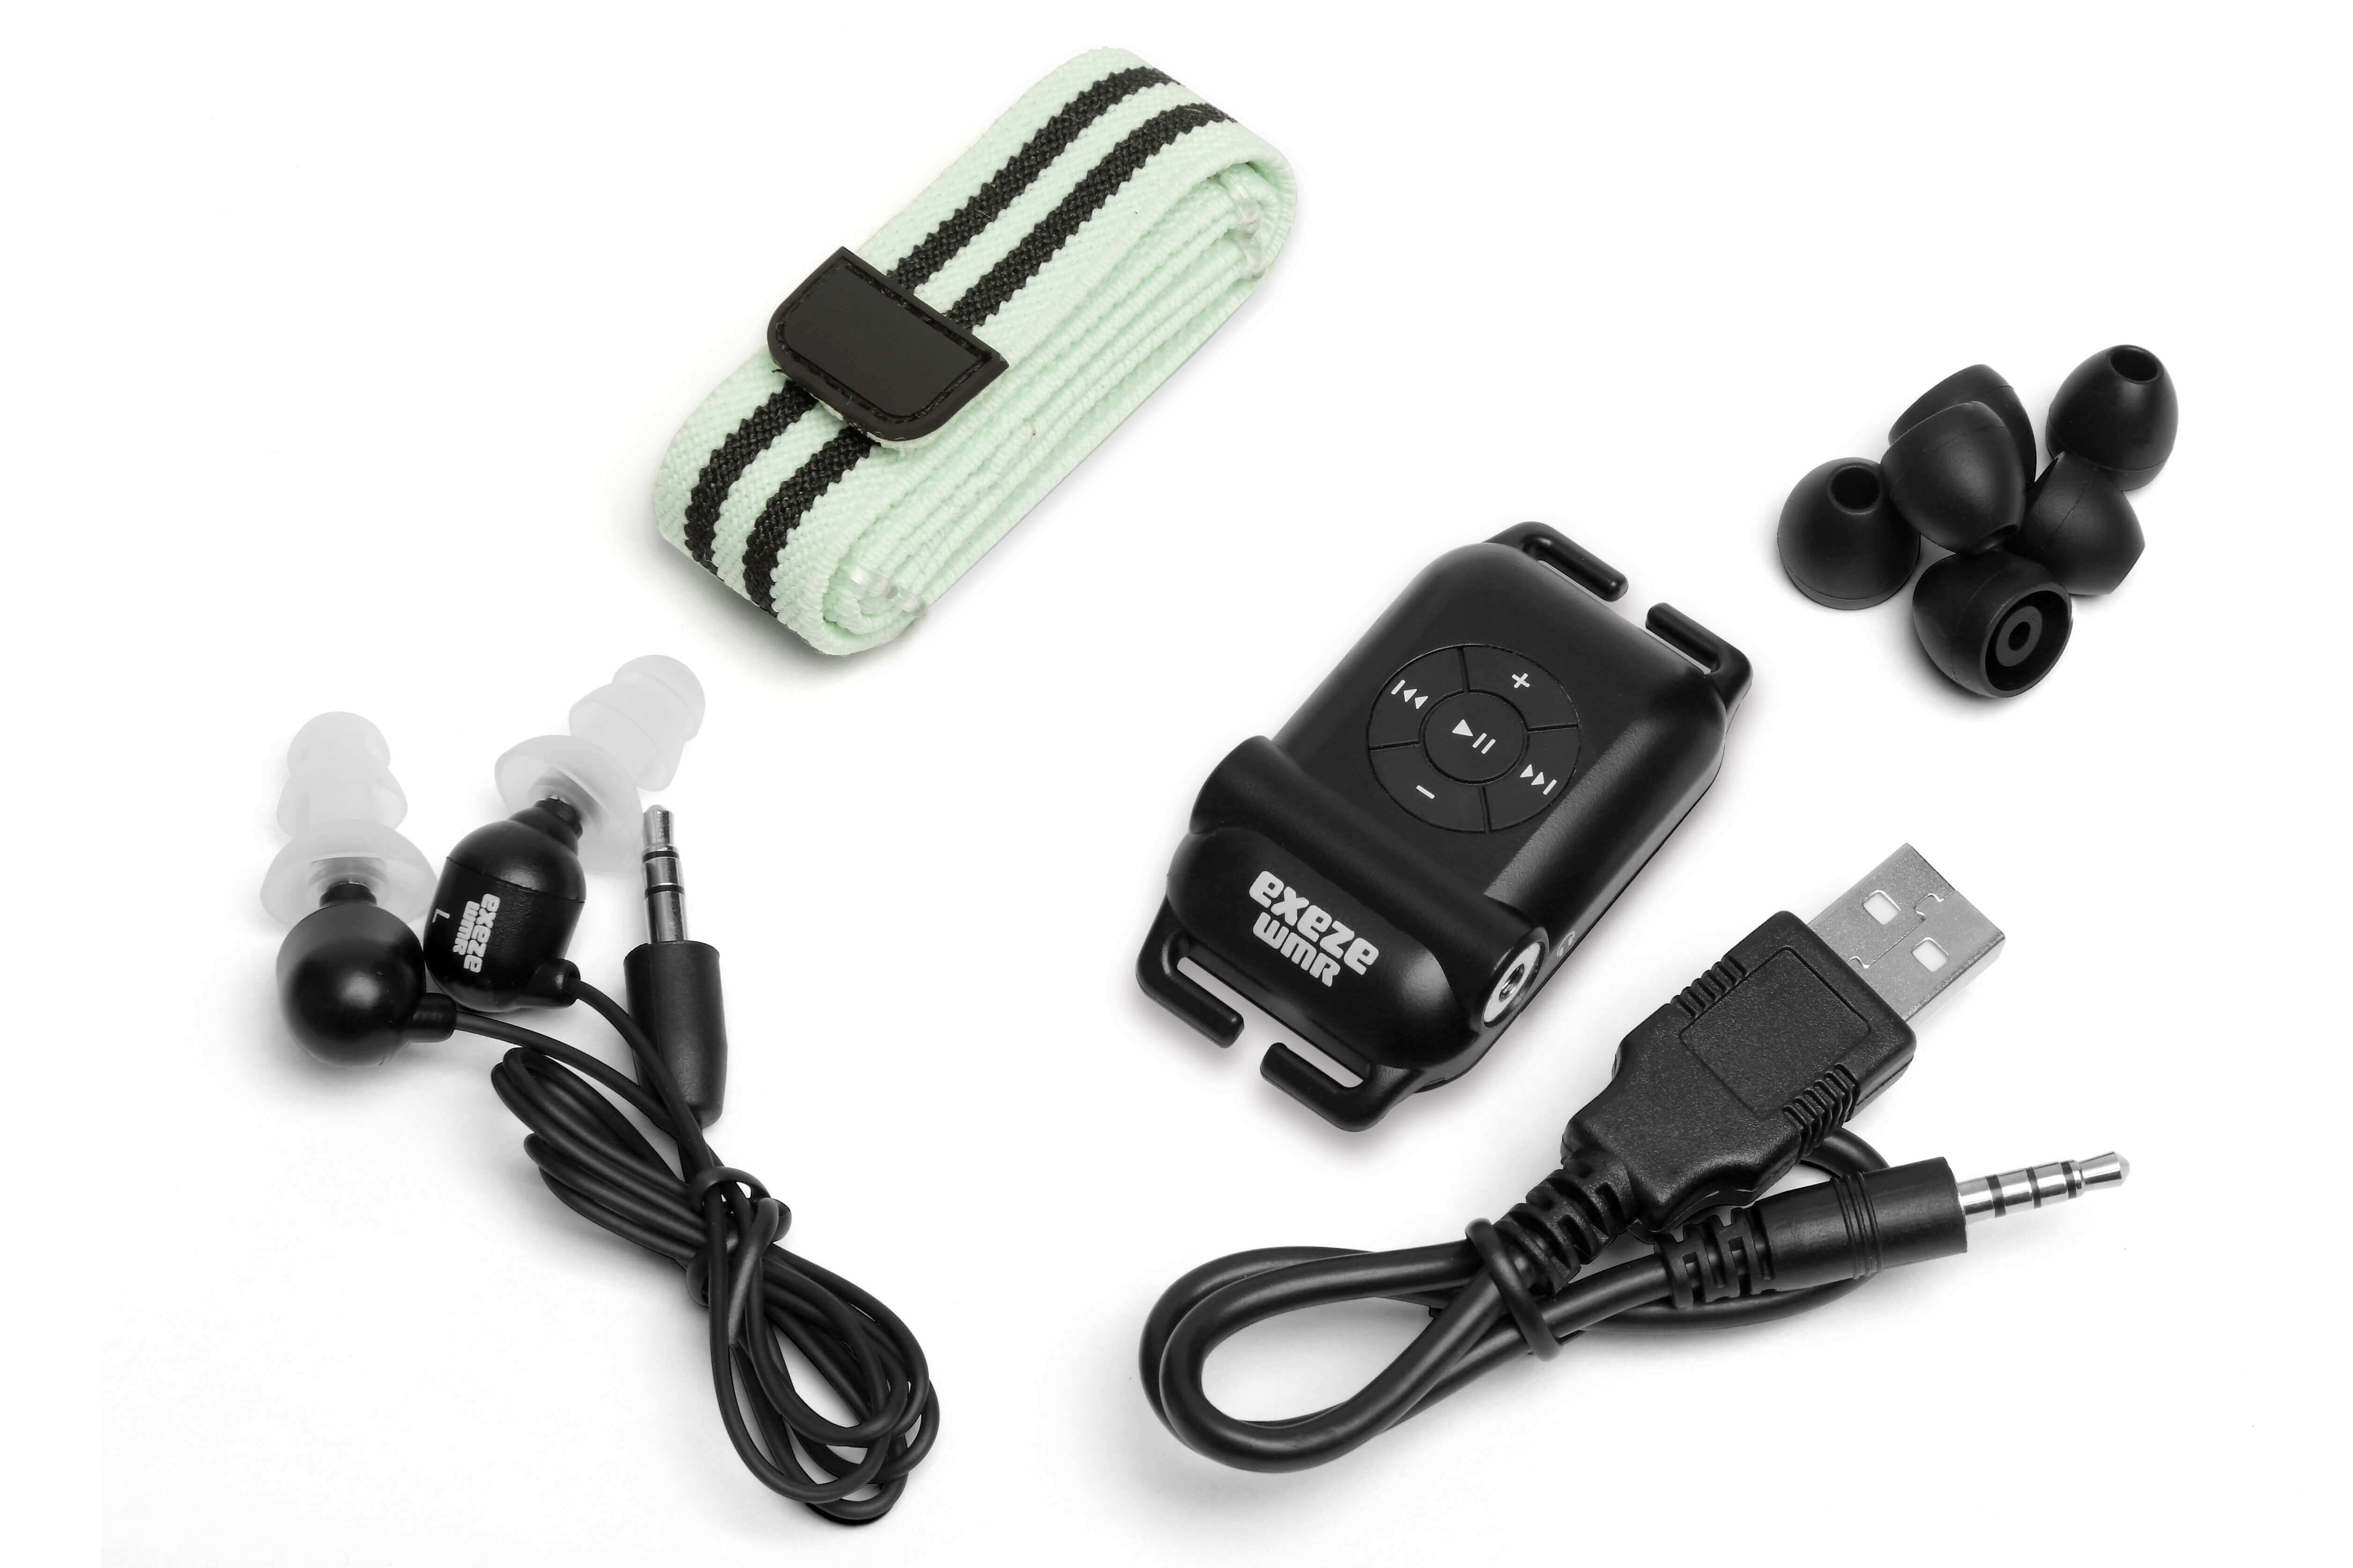 Exeze WMR Reproductor MP3 a prueba de agua (2Gen)